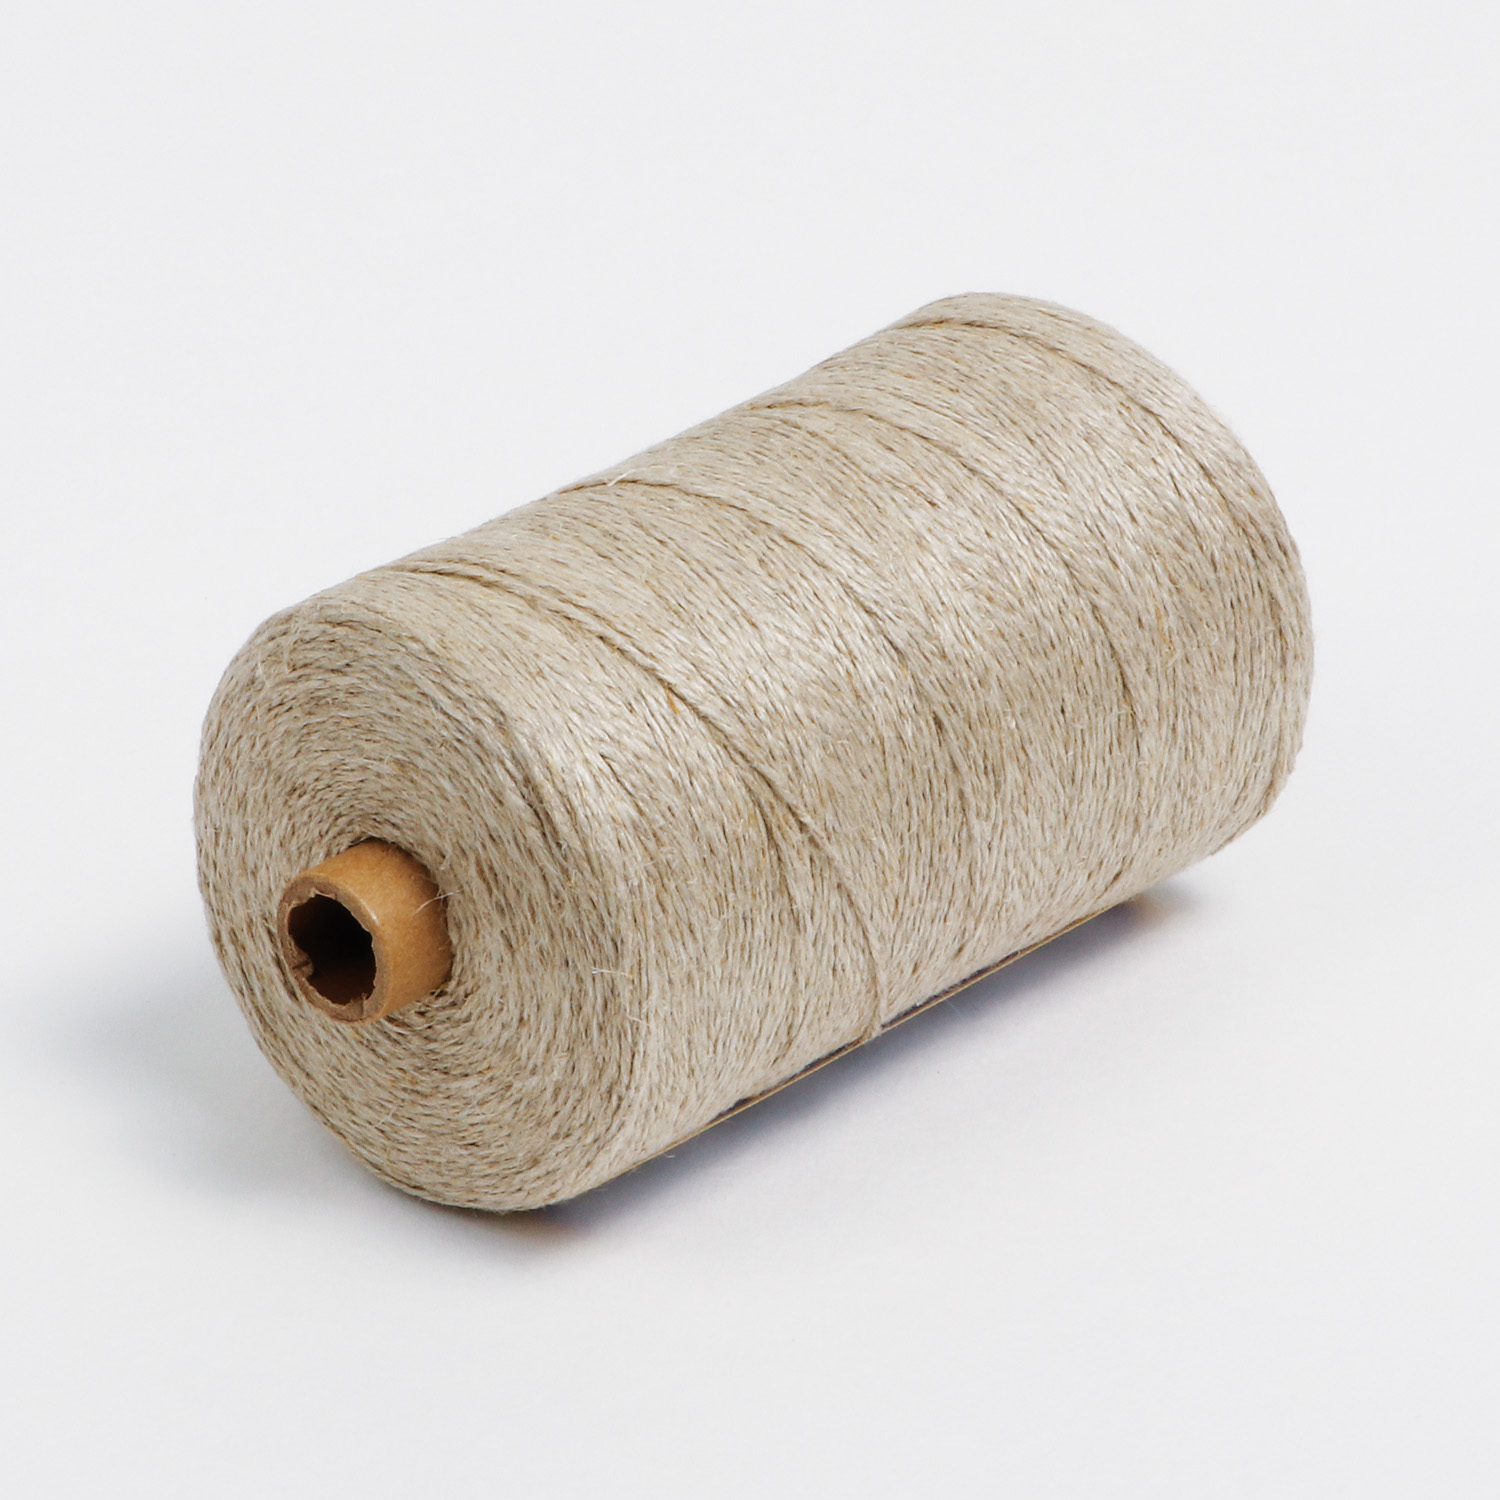 Bockens flax twine/string - Nm 5,6/2 (NeL 8/2), 250g, Twine / Sewing  Thread